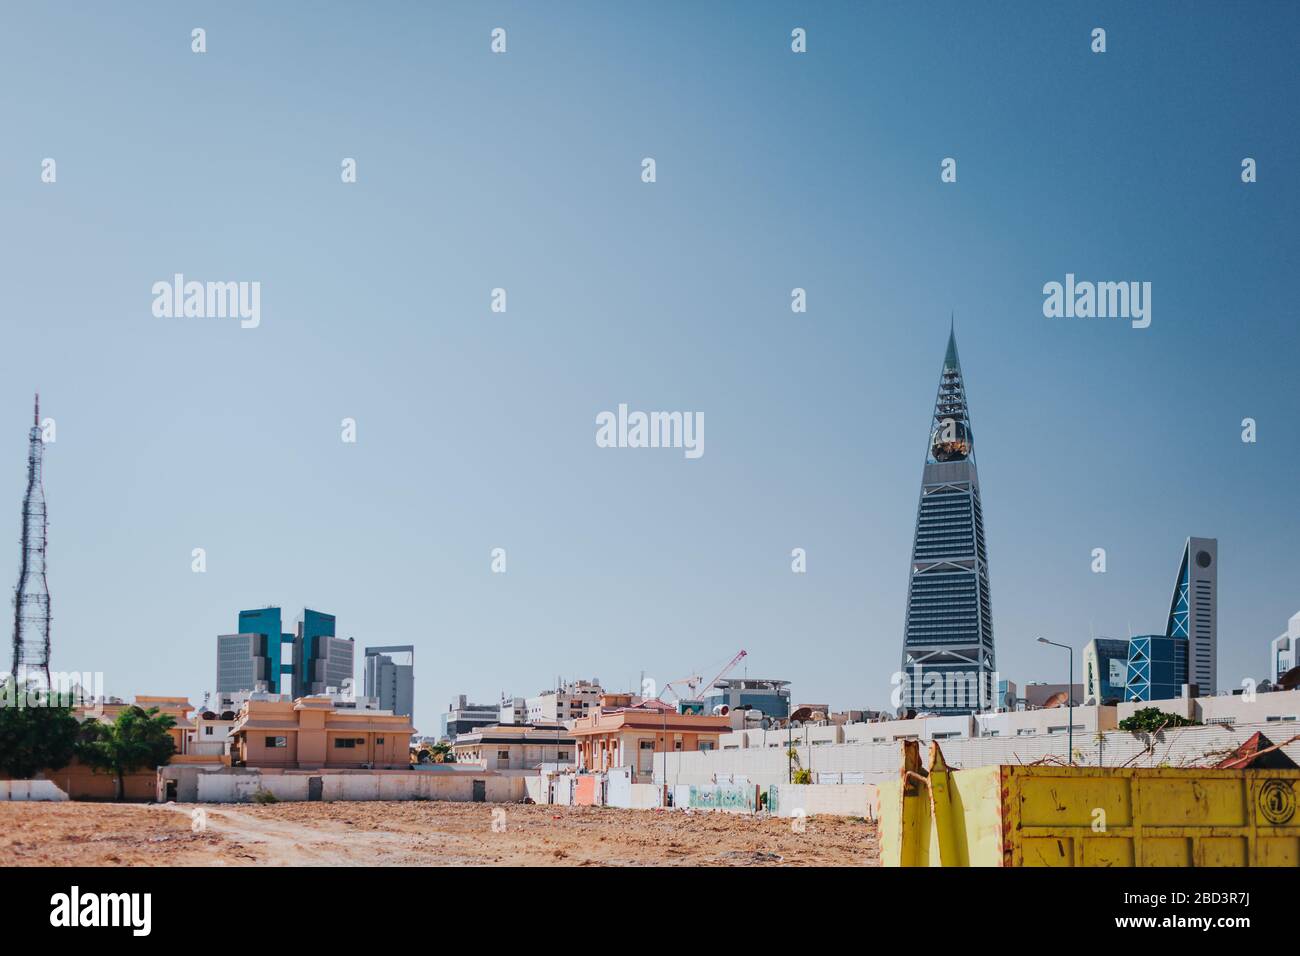 Riyadh, Saudi Arabia - November 6, 2019: Perpective view of the King Fahad Wasteland for new construction Stock Photo